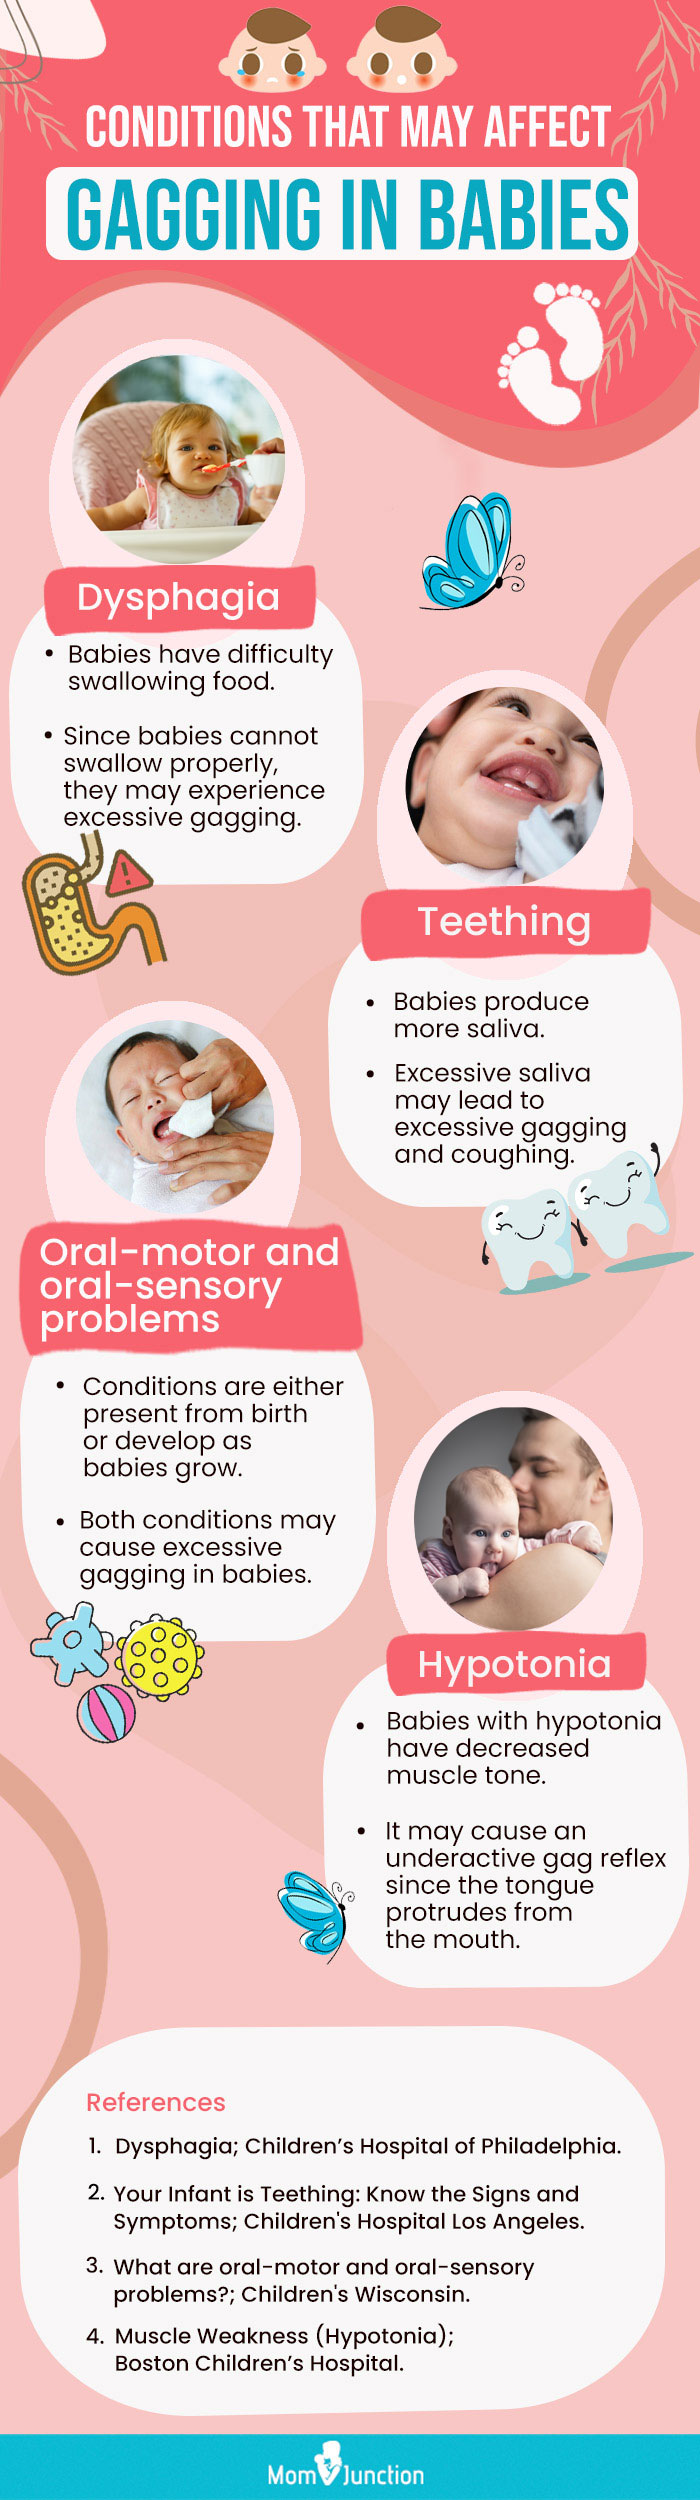 可能影响婴儿呕吐的条件(信息图)